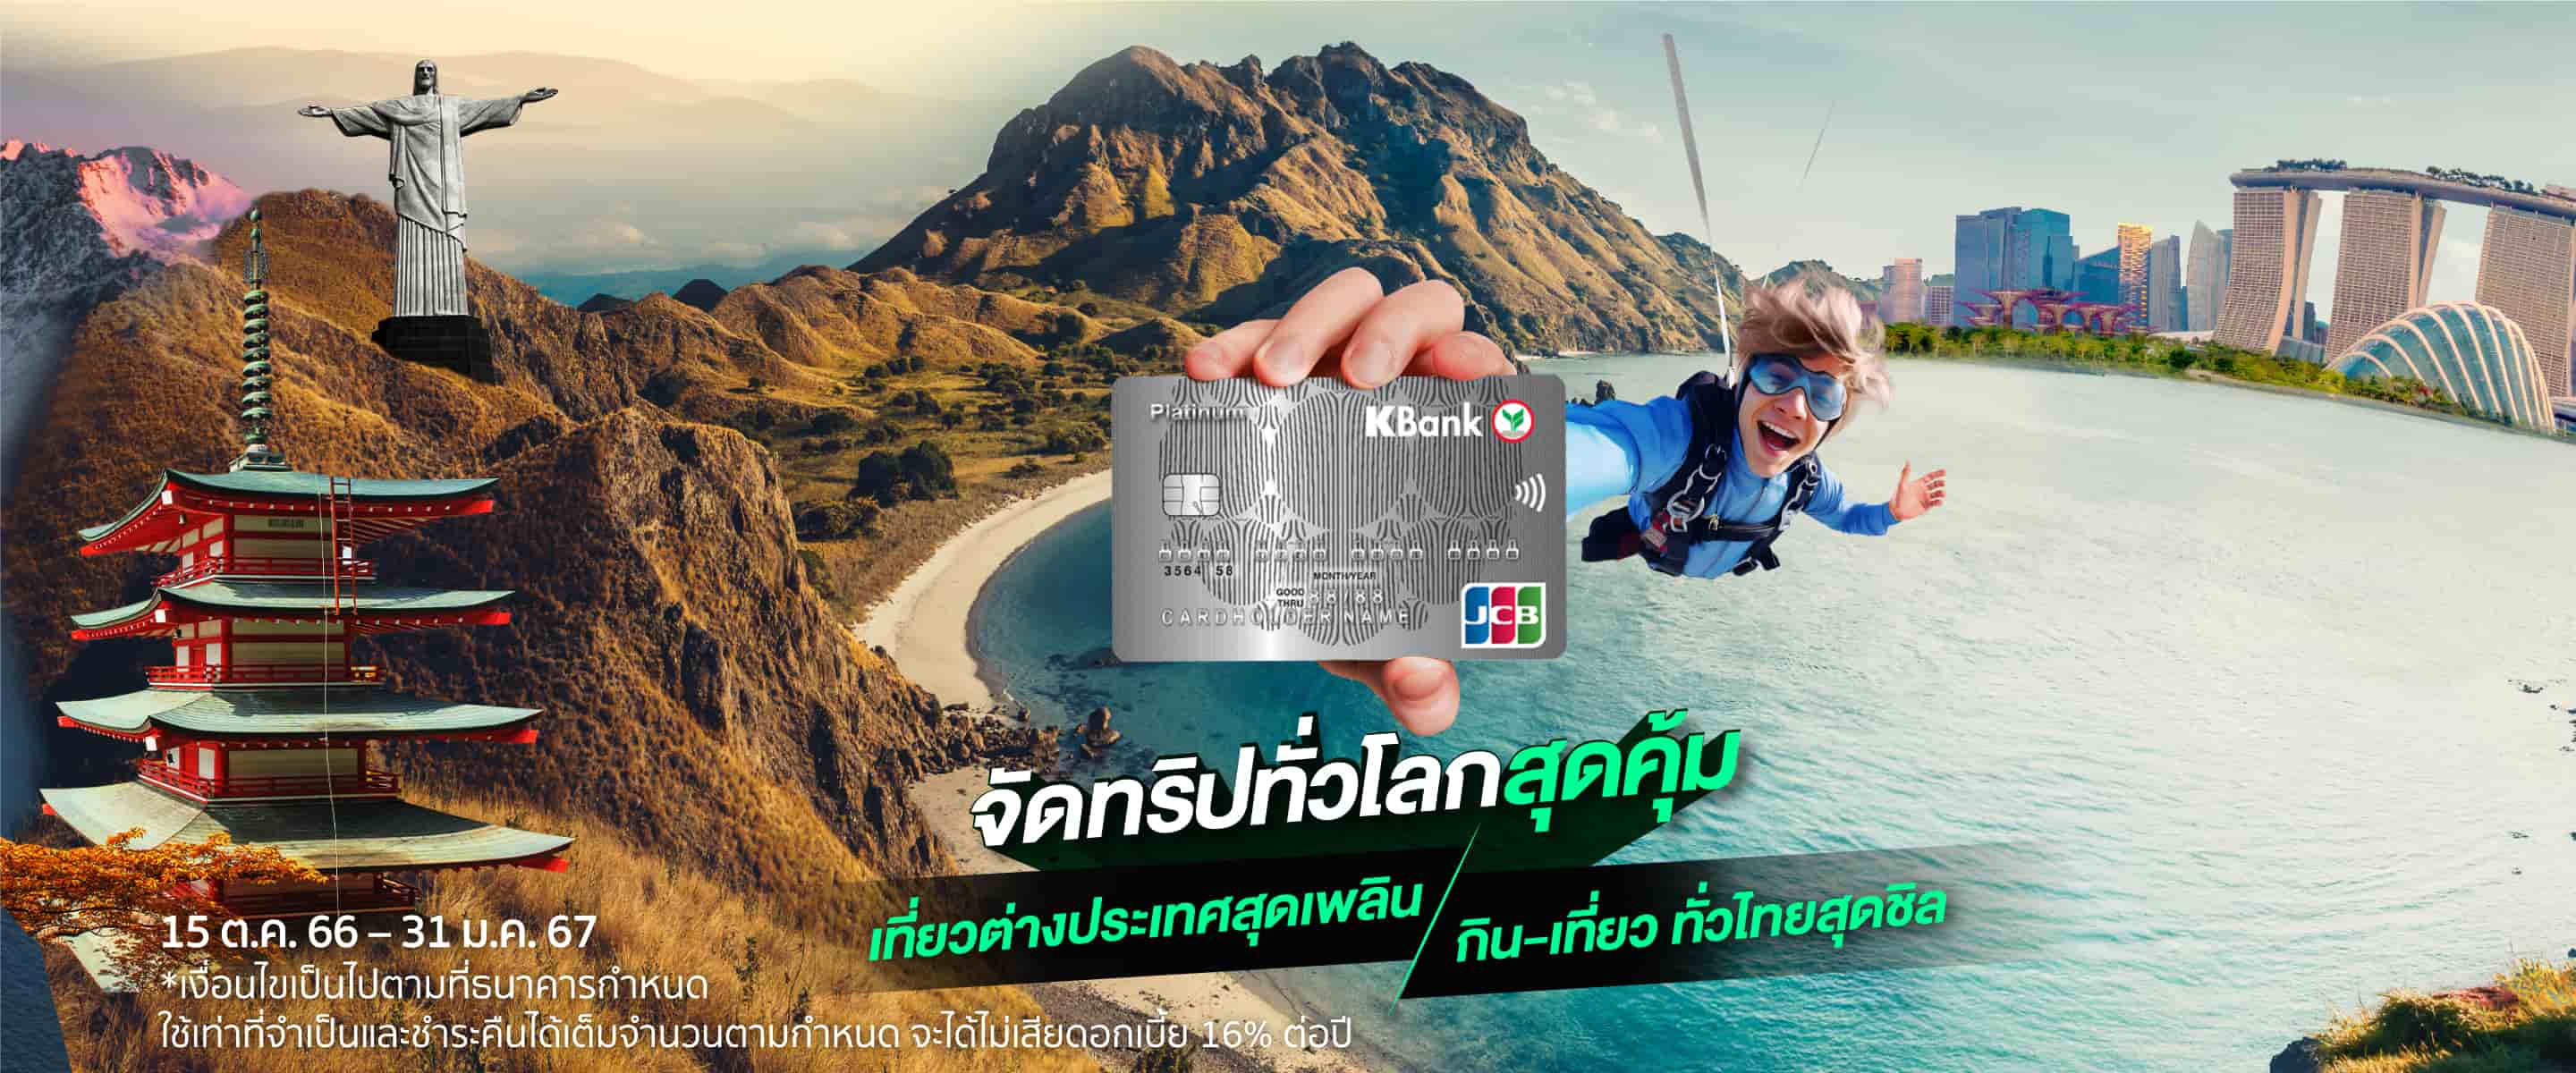 ช้อป-เที่ยว คุ้มๆ กับบัตรเครดิตกสิกรไทย